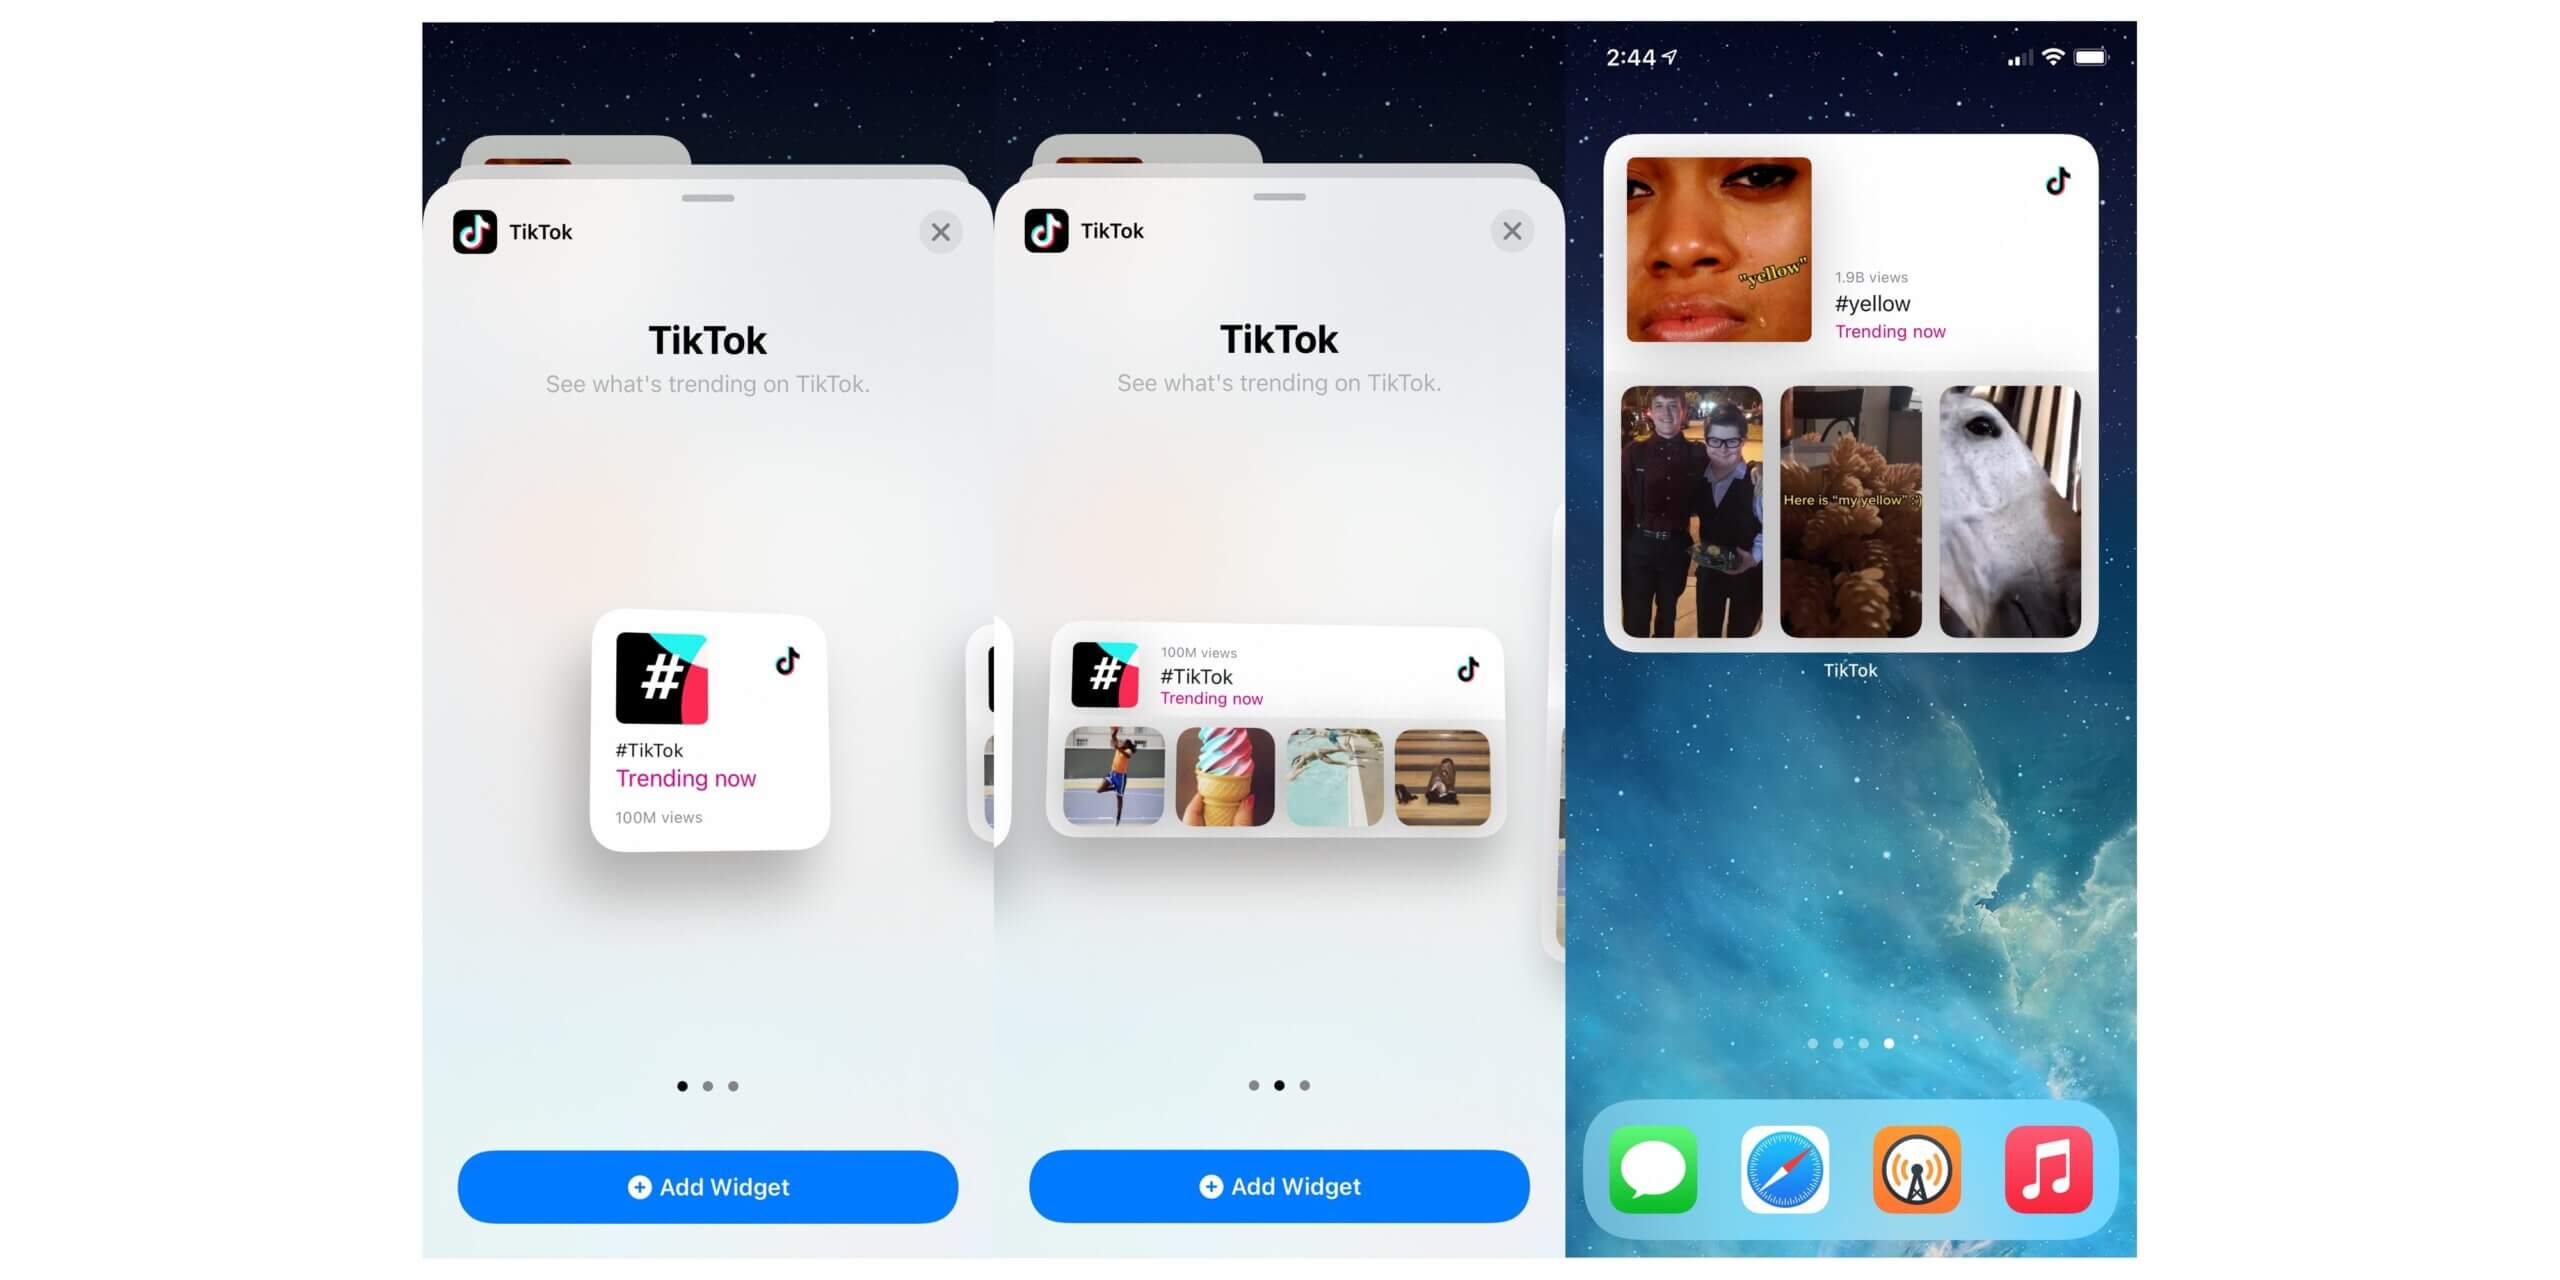 В приложение TikTok добавлены новые виджеты главного экрана iOS 14 для популярных видео